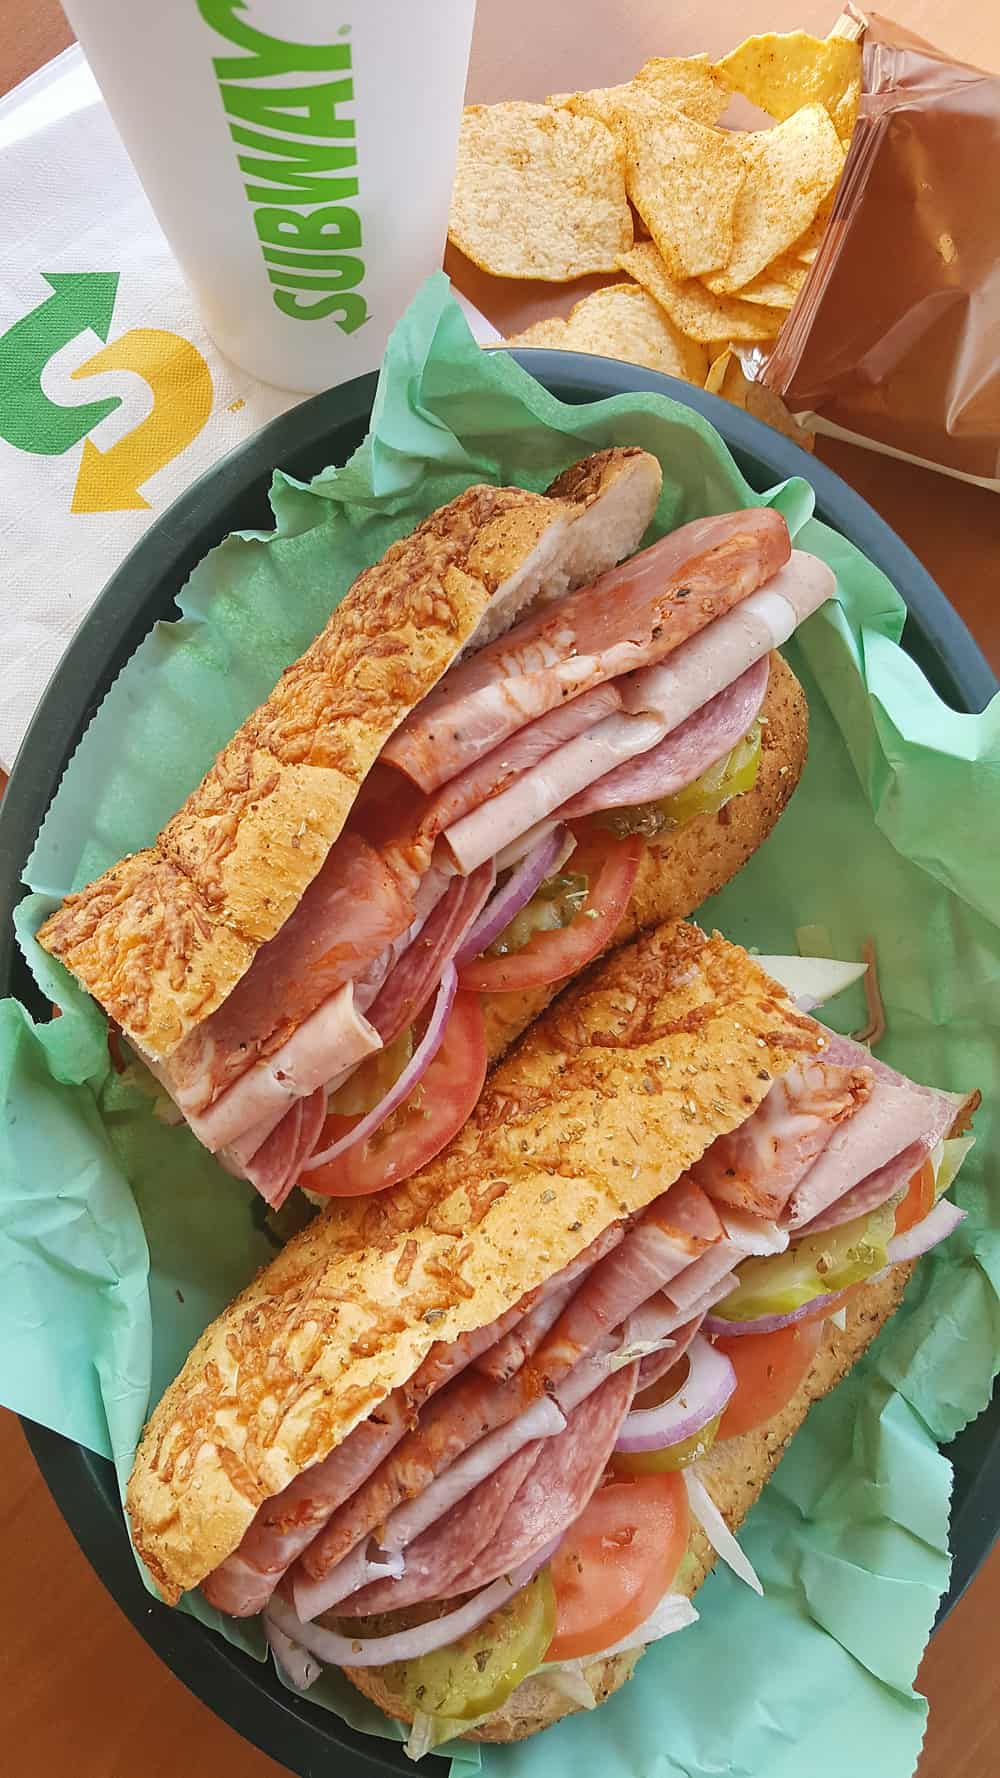 subway club sandwich